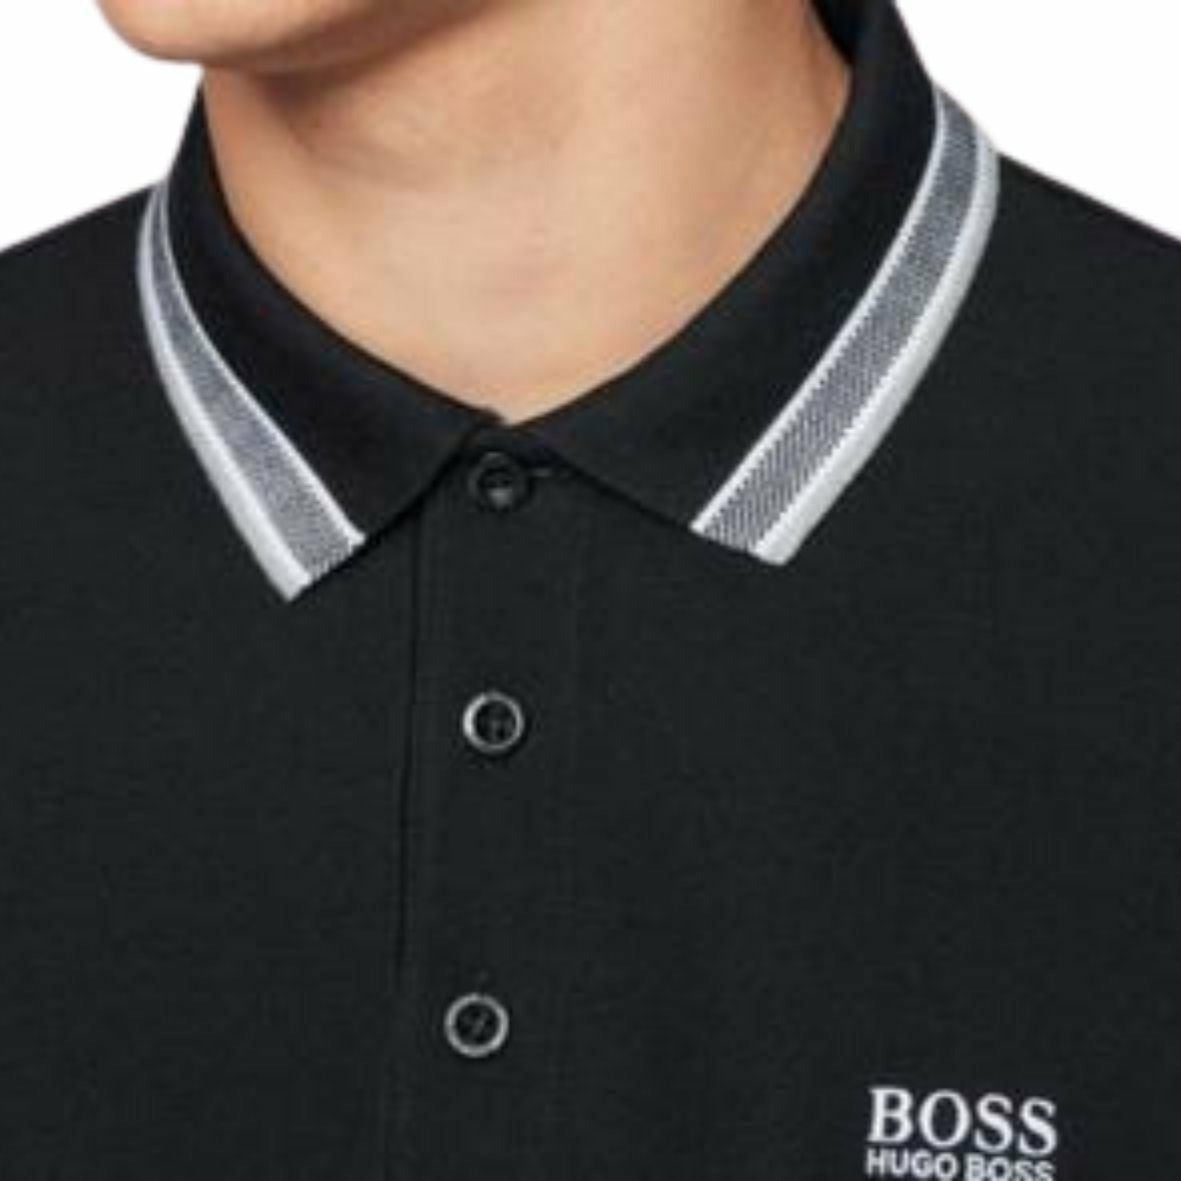 Hugo Boss "Baddy" Cotton Polo